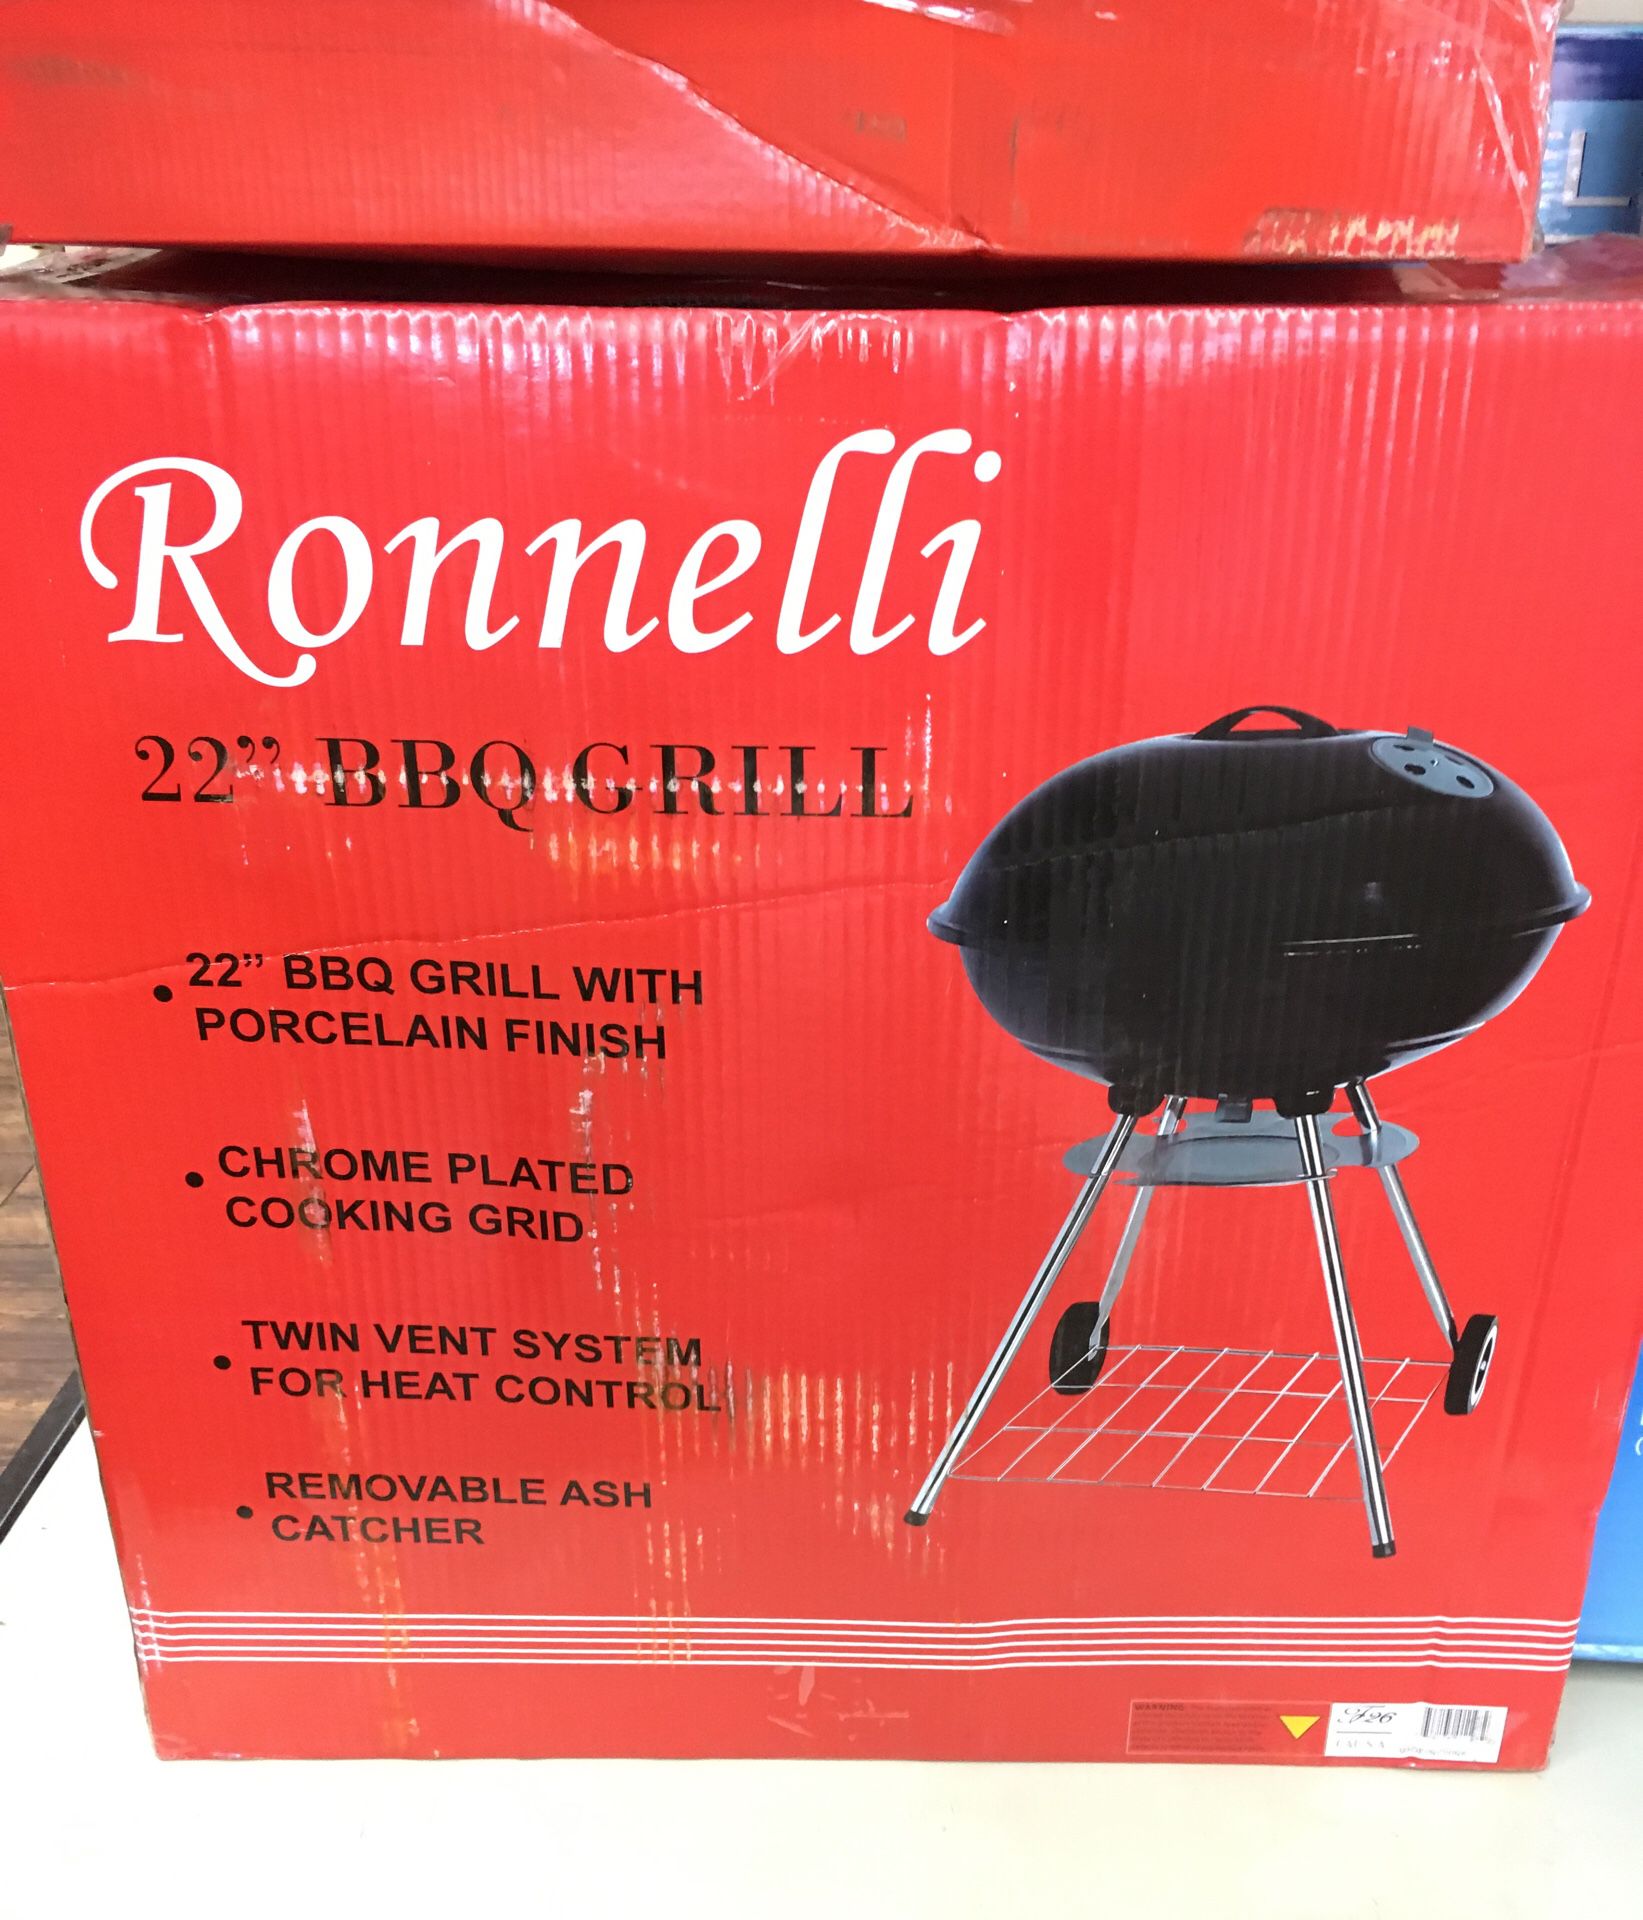 Ronnelli 22" BBQ Grill